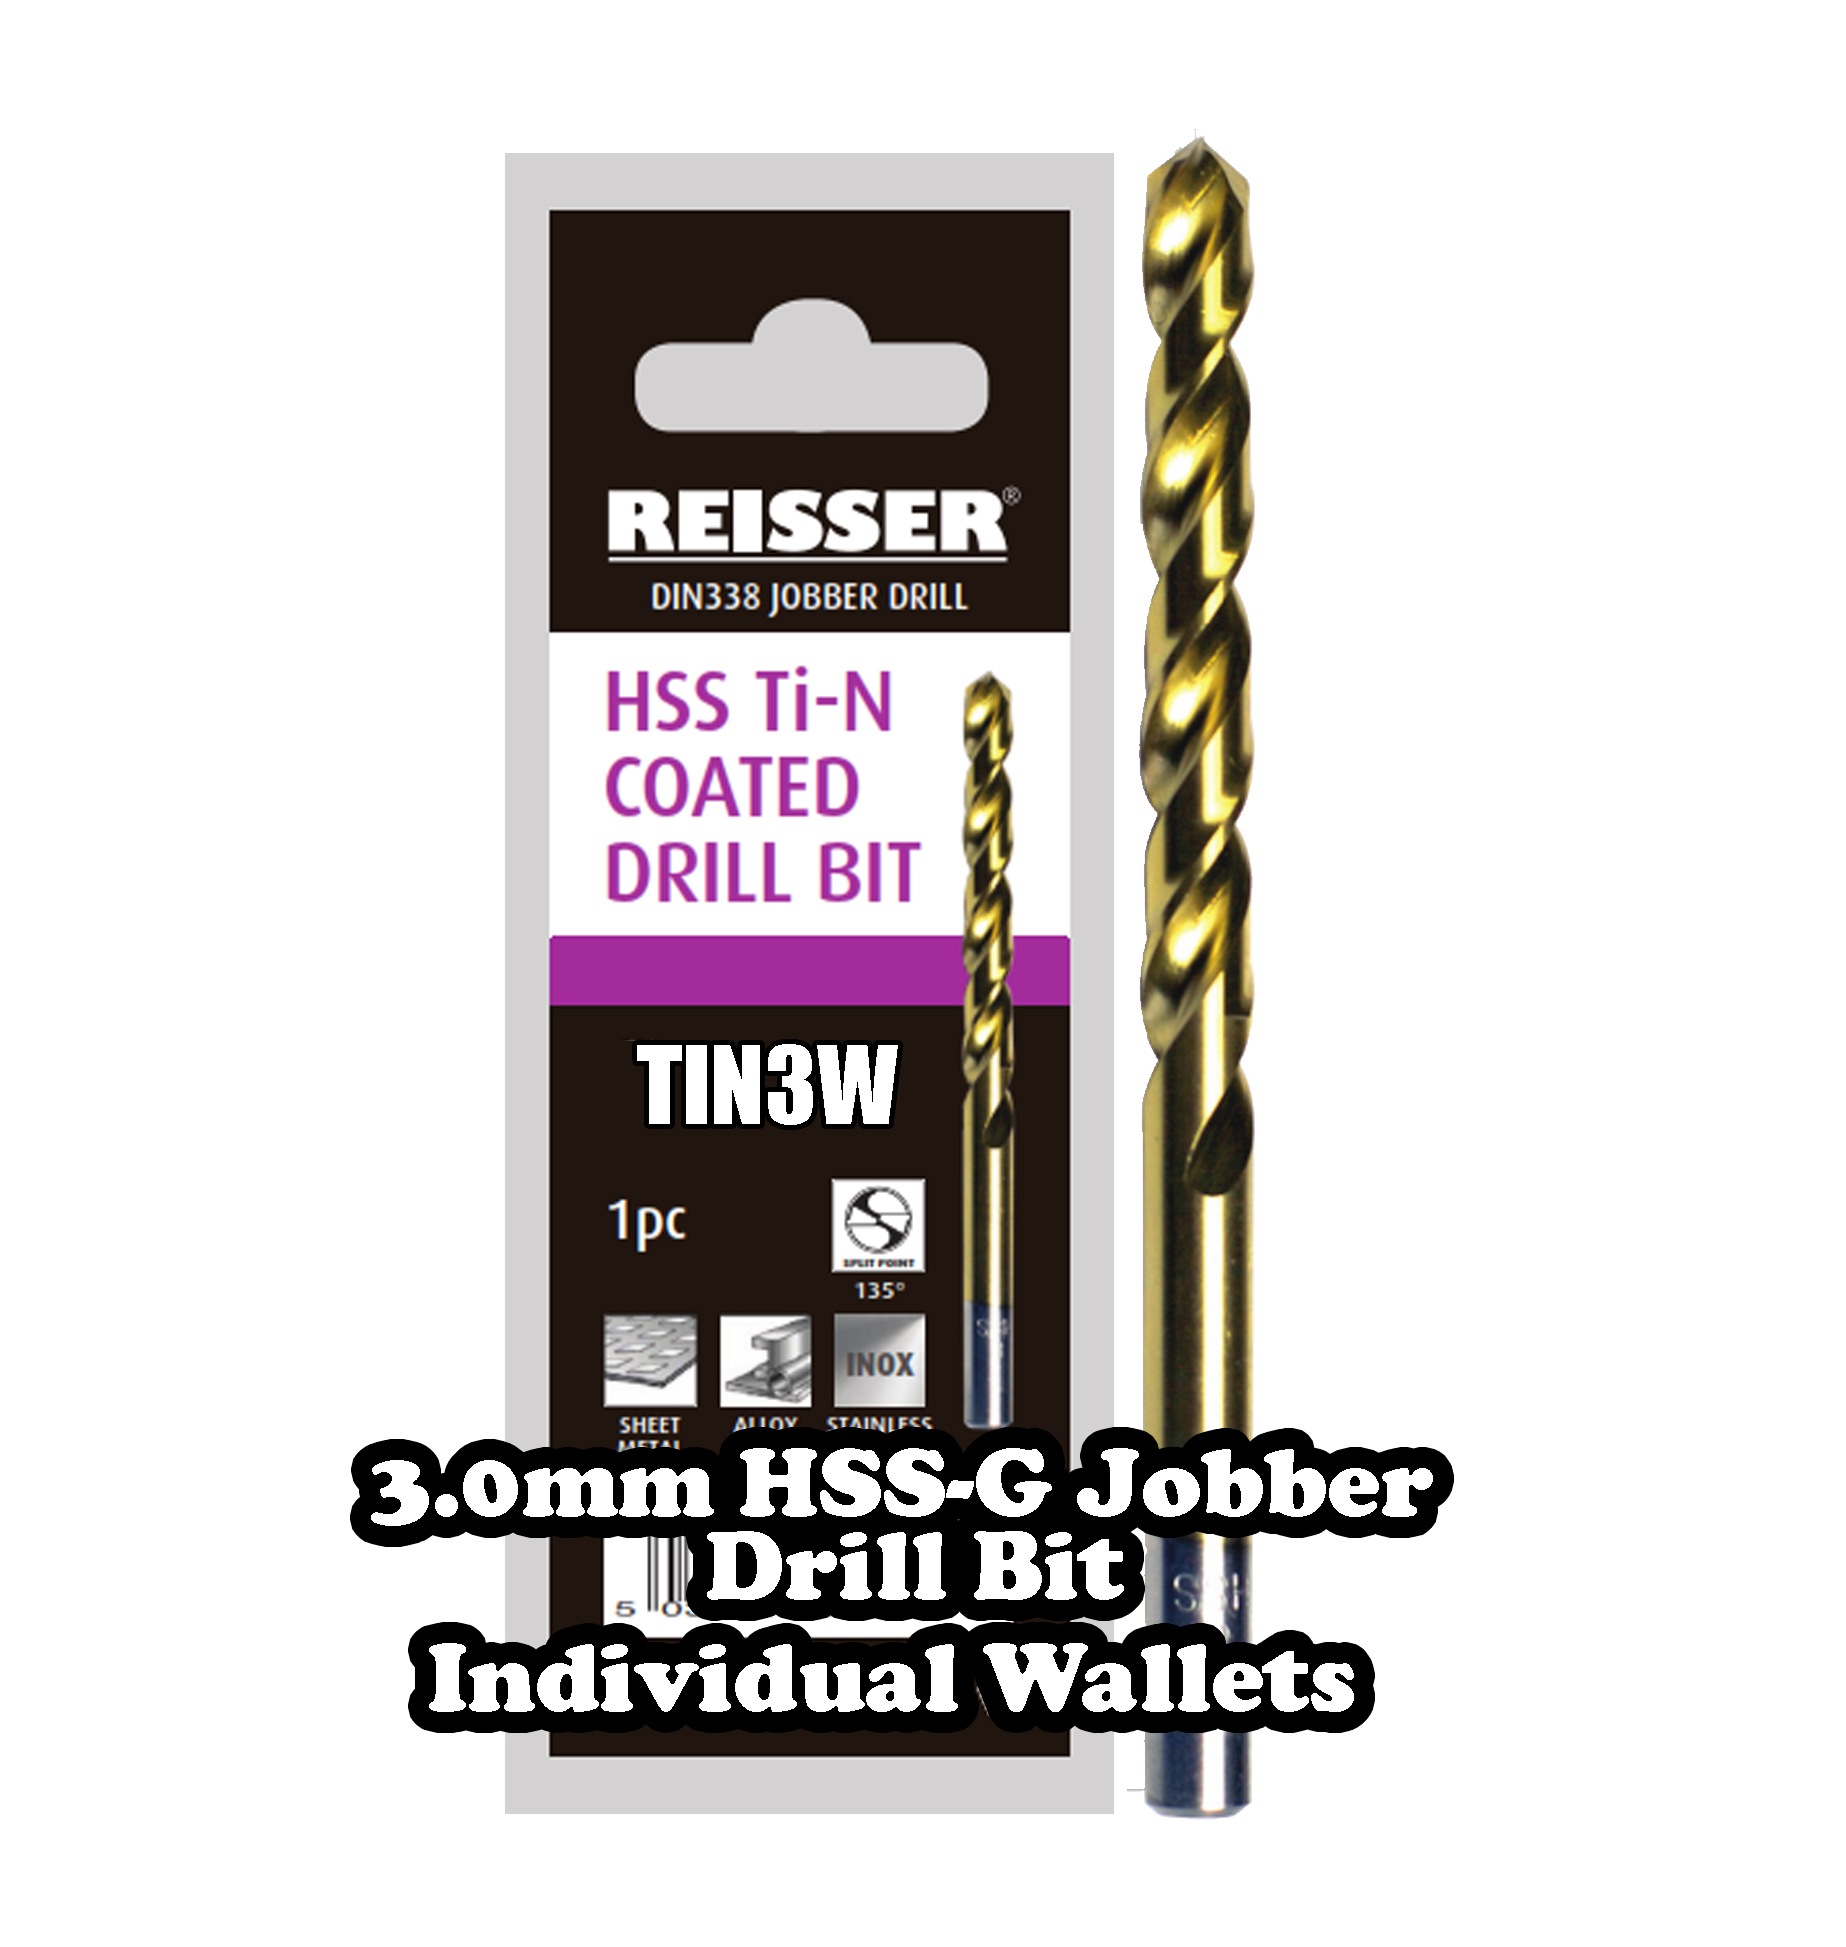 3.0 mm HSS Jobber Drill Bit (SINGLE WALLET)